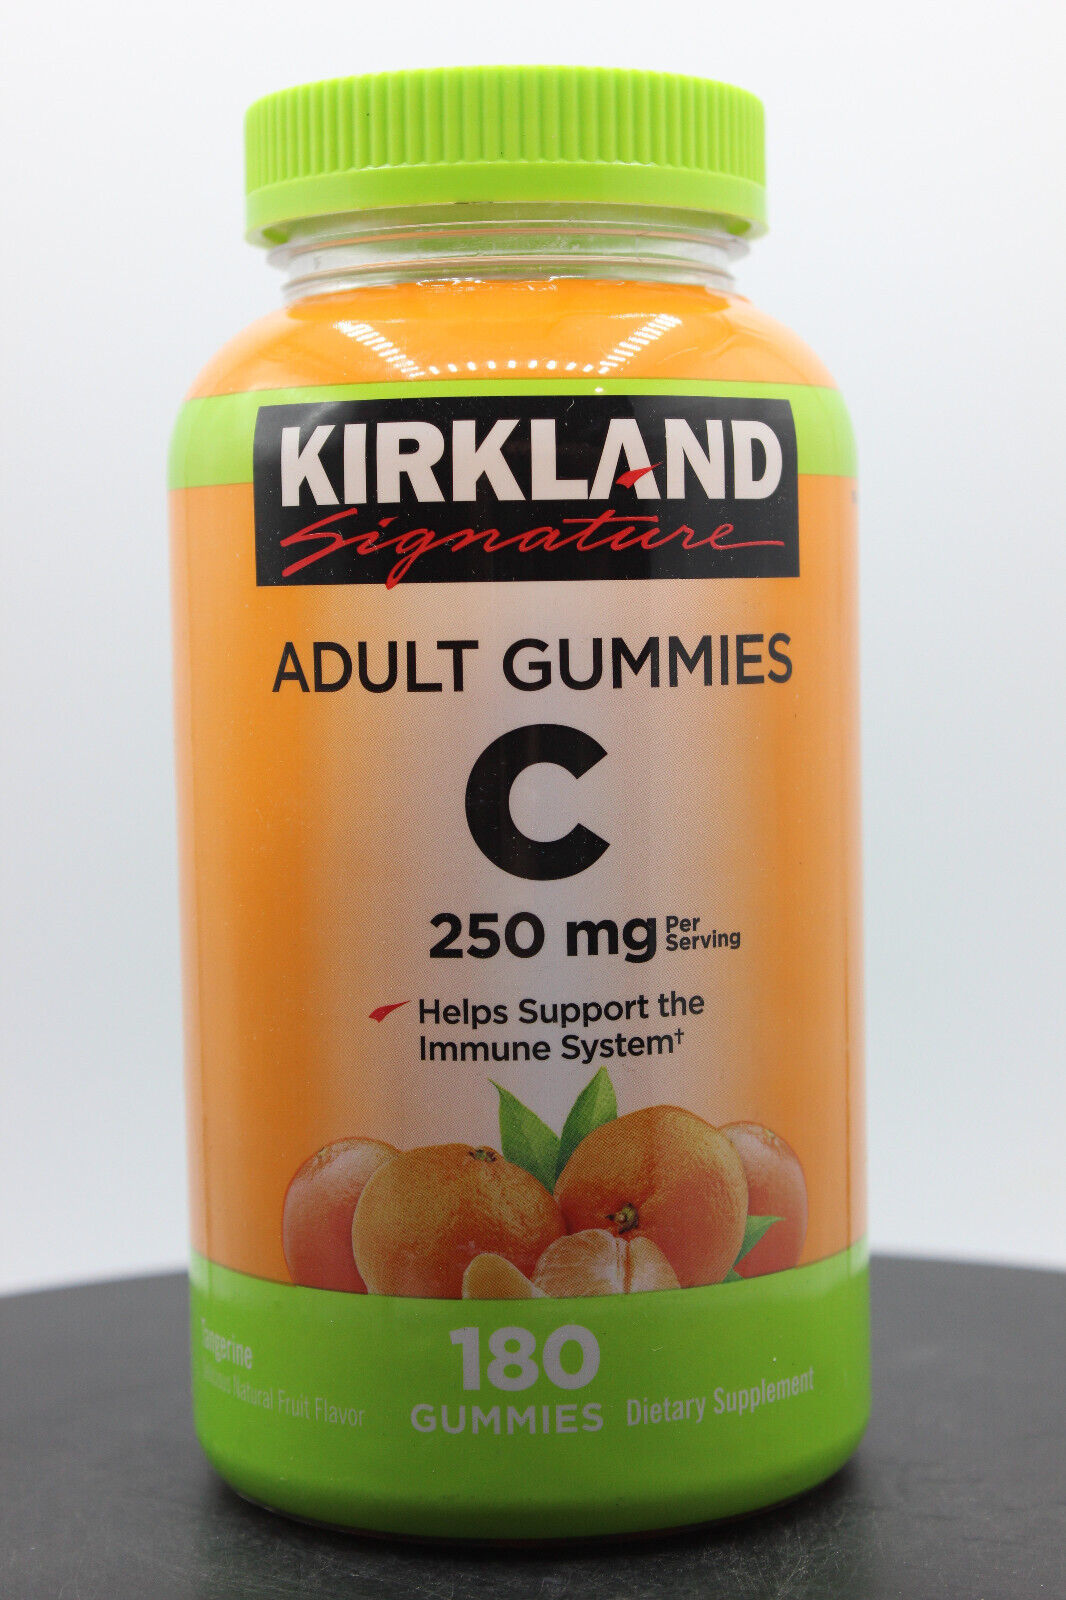 Kirkland Signature Vitamin C 250 mg, 180 Adult Gummies, Expires 03/2024 - $16.82